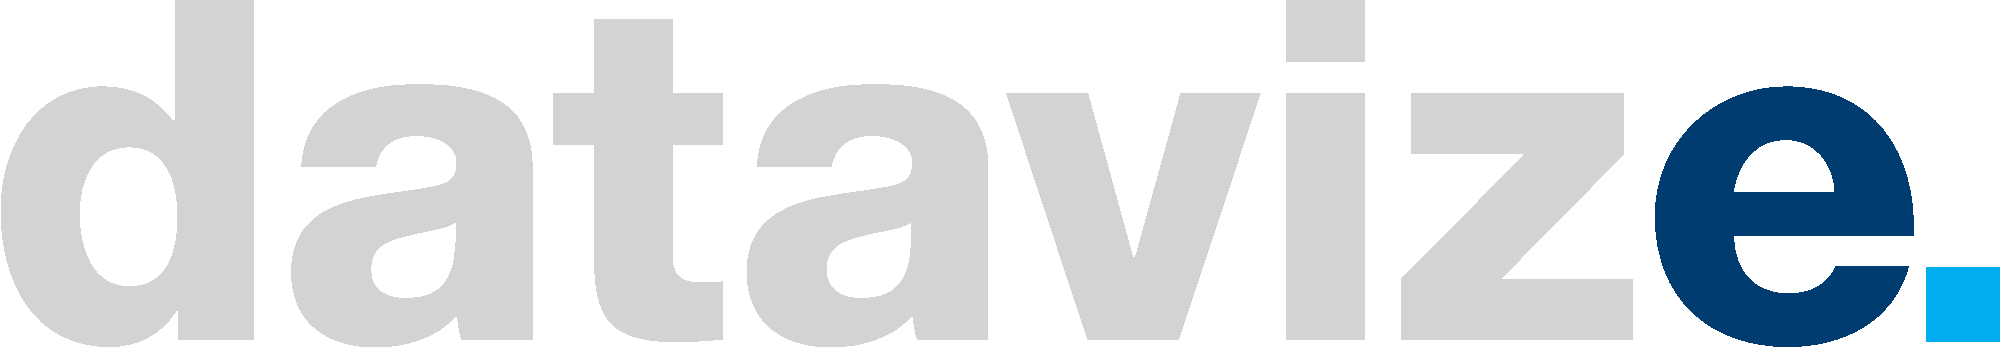 Datavize logo